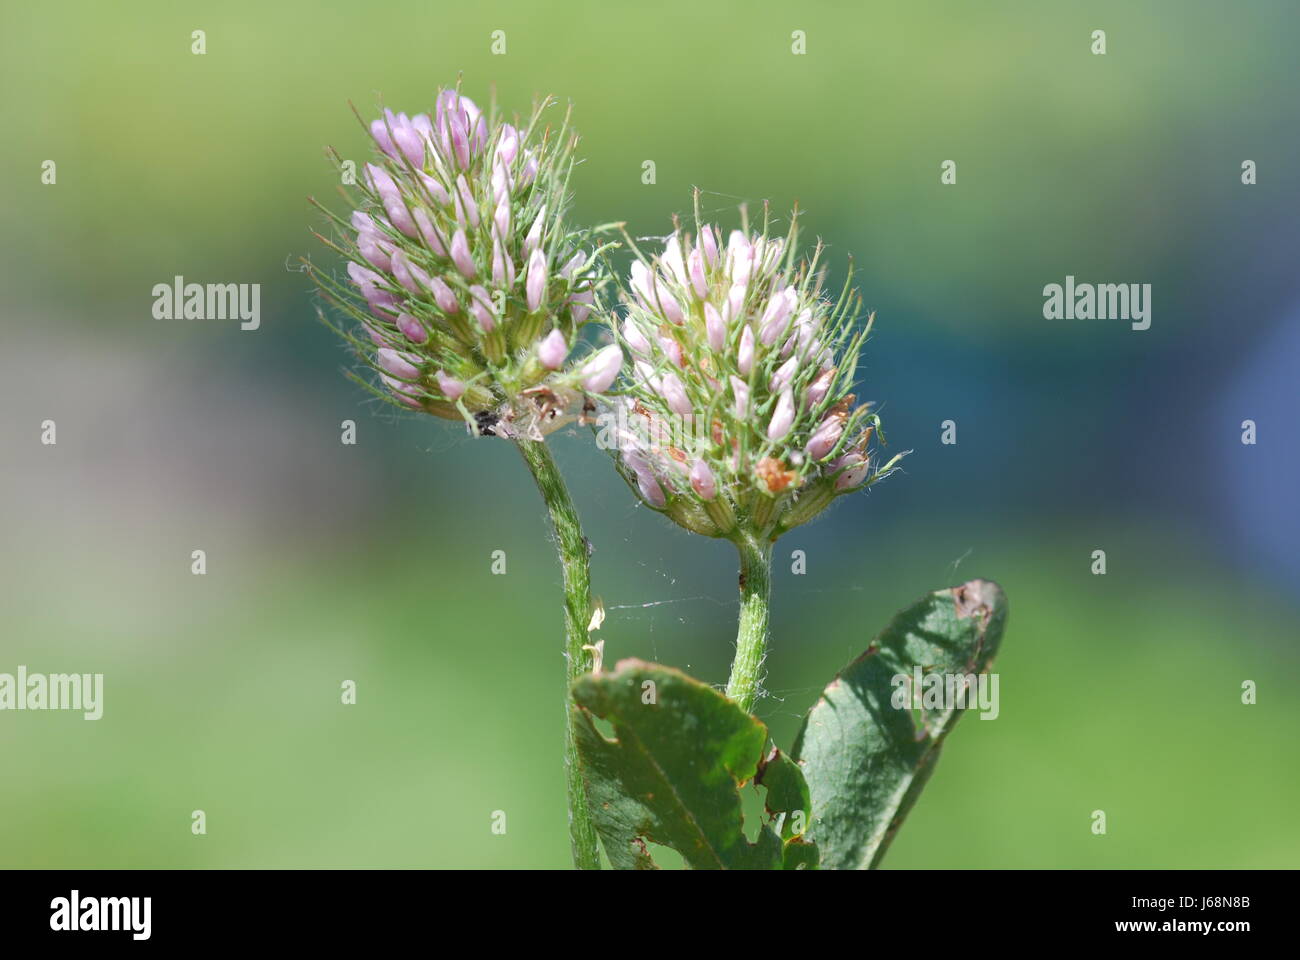 hasen-clover (trifolium arvense) Stock Photo